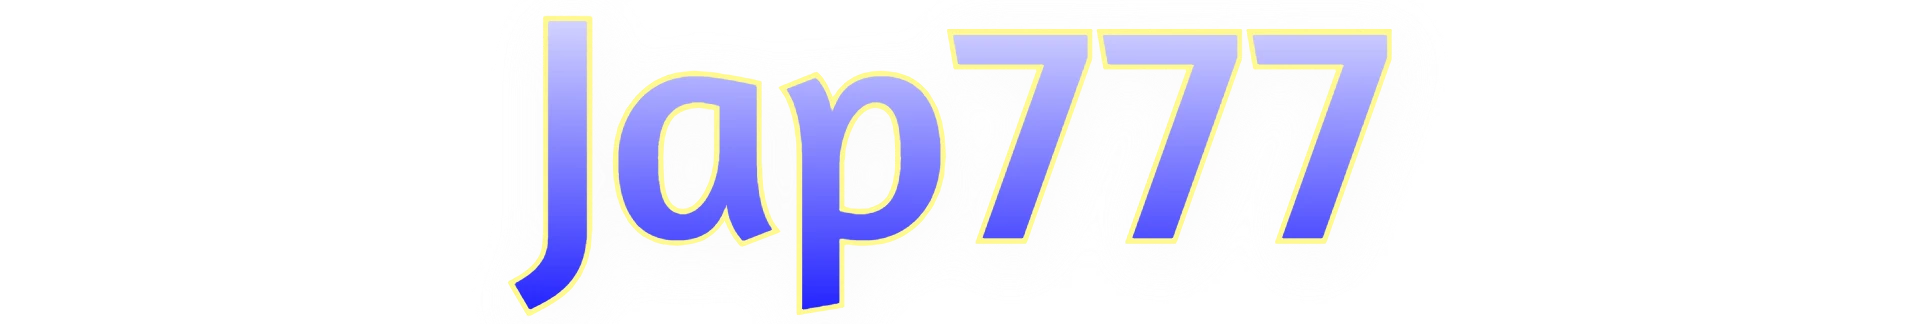 Jap777